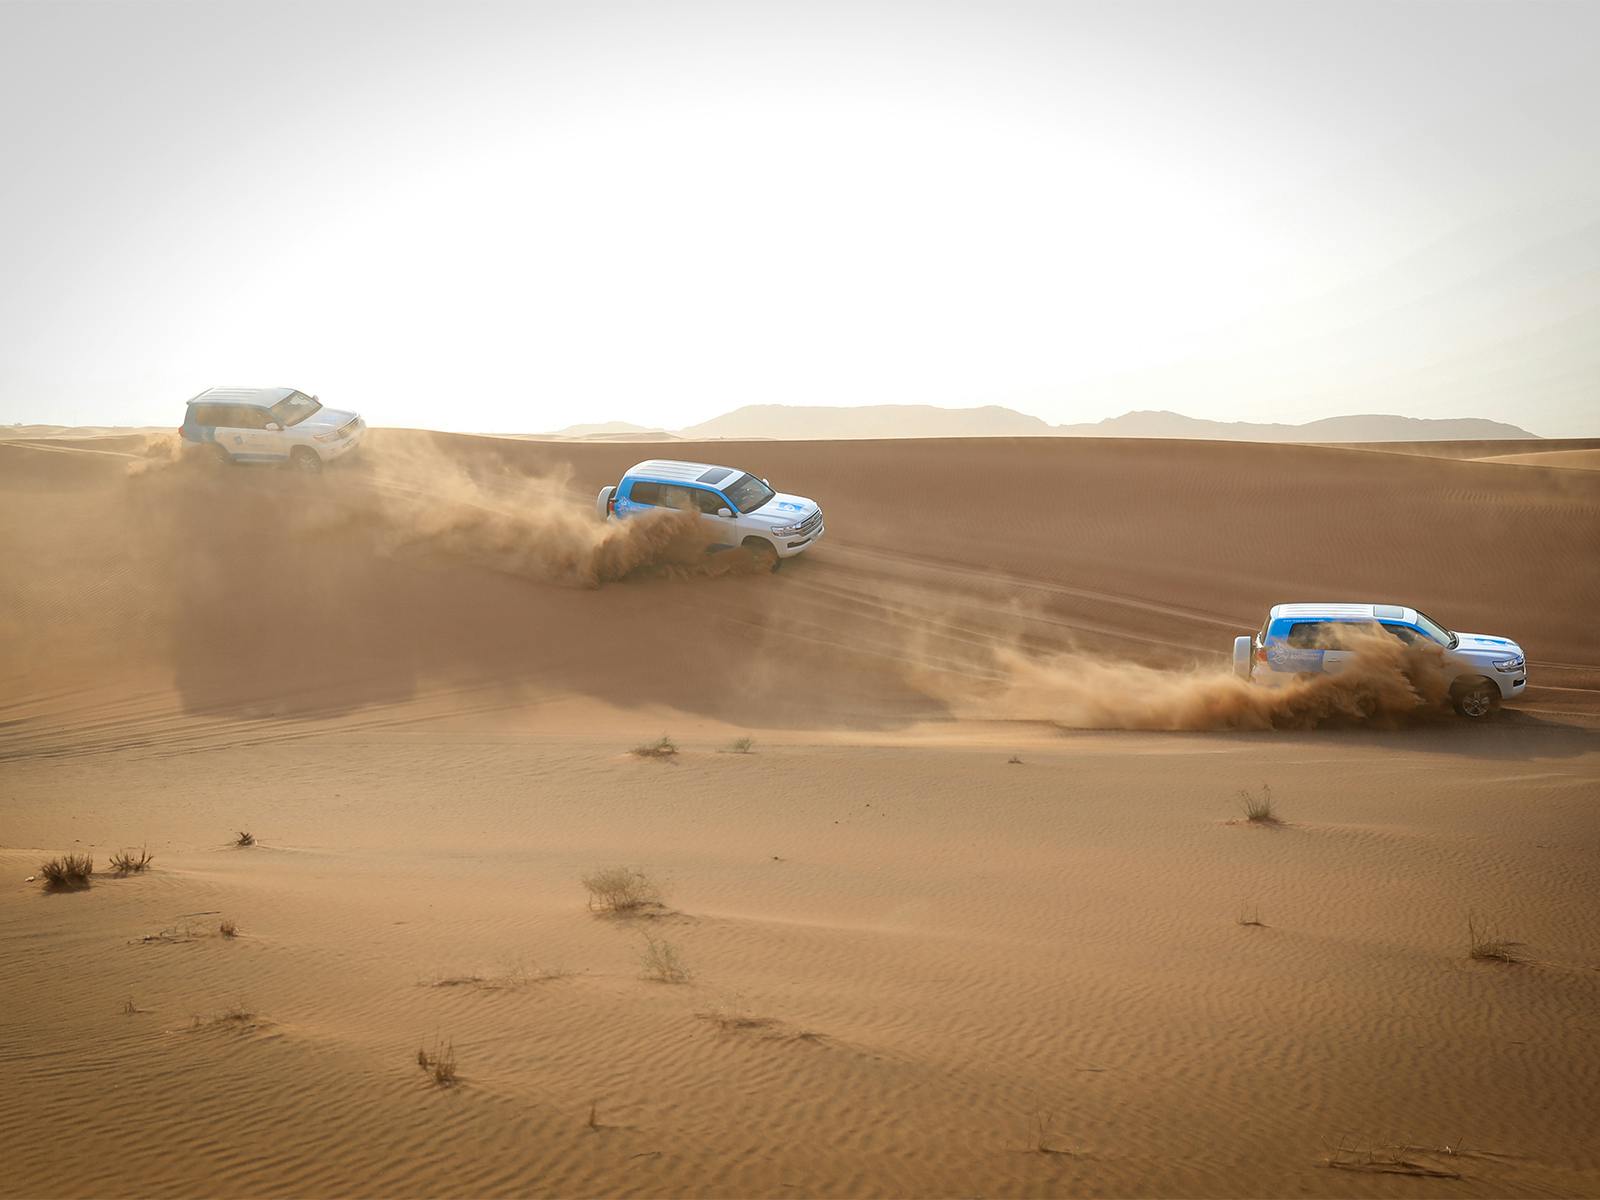 Safari matinal no deserto de Abu Dhabi com passeio de camelo